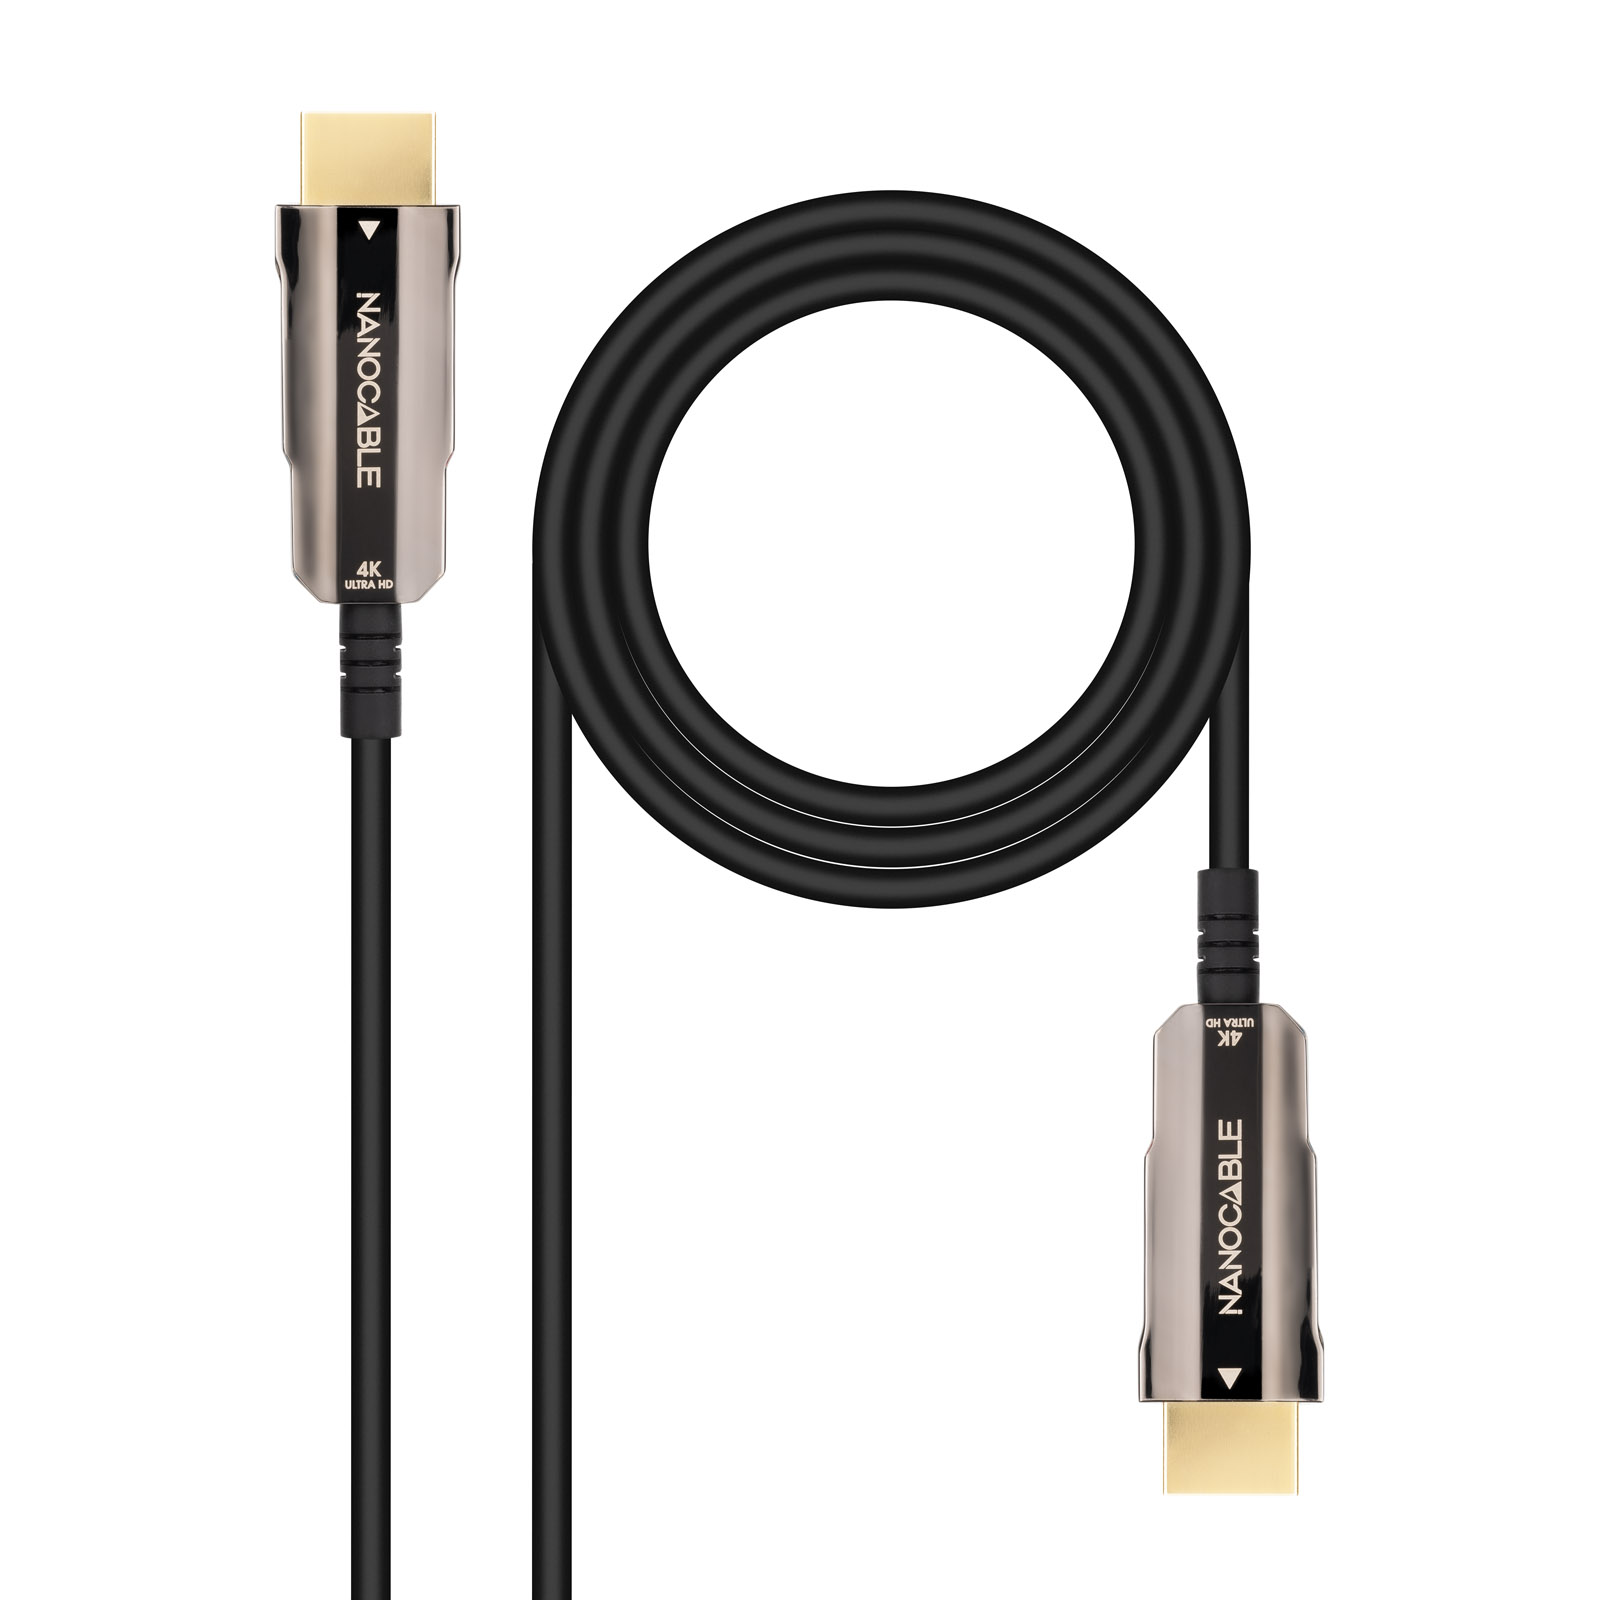 Nanocable Câble HDMI v2.0 Mâle vers HDMI v2.0 Mâle 15m - 4K@60Hz 18Gbps - Couleur Noir